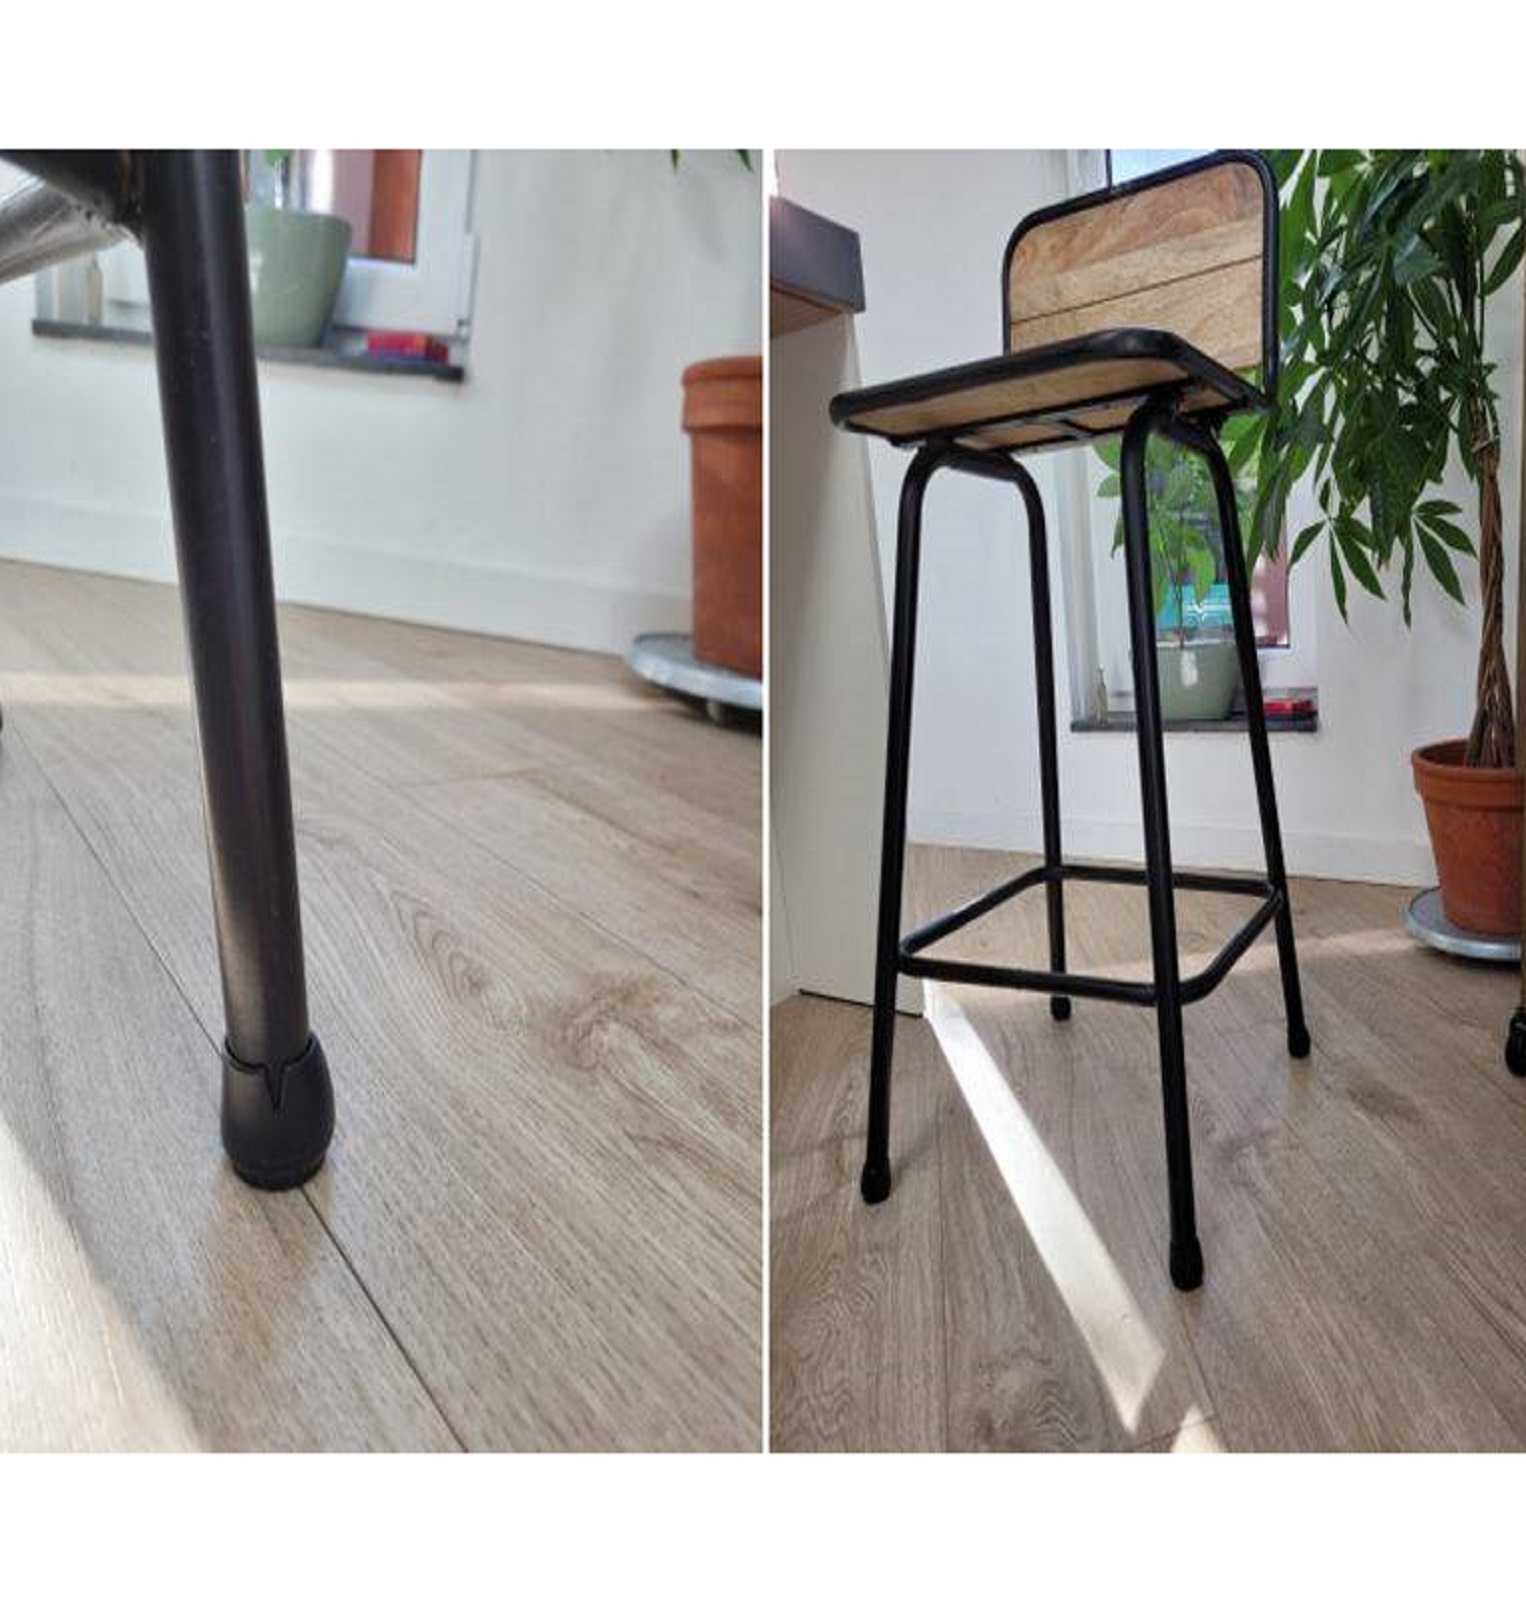 Vízálló – szilikon székláb védőhuzatok a padló és a széklábak védelmére – 16 db-os csomagban, fekete szín (BB-17235) (2)